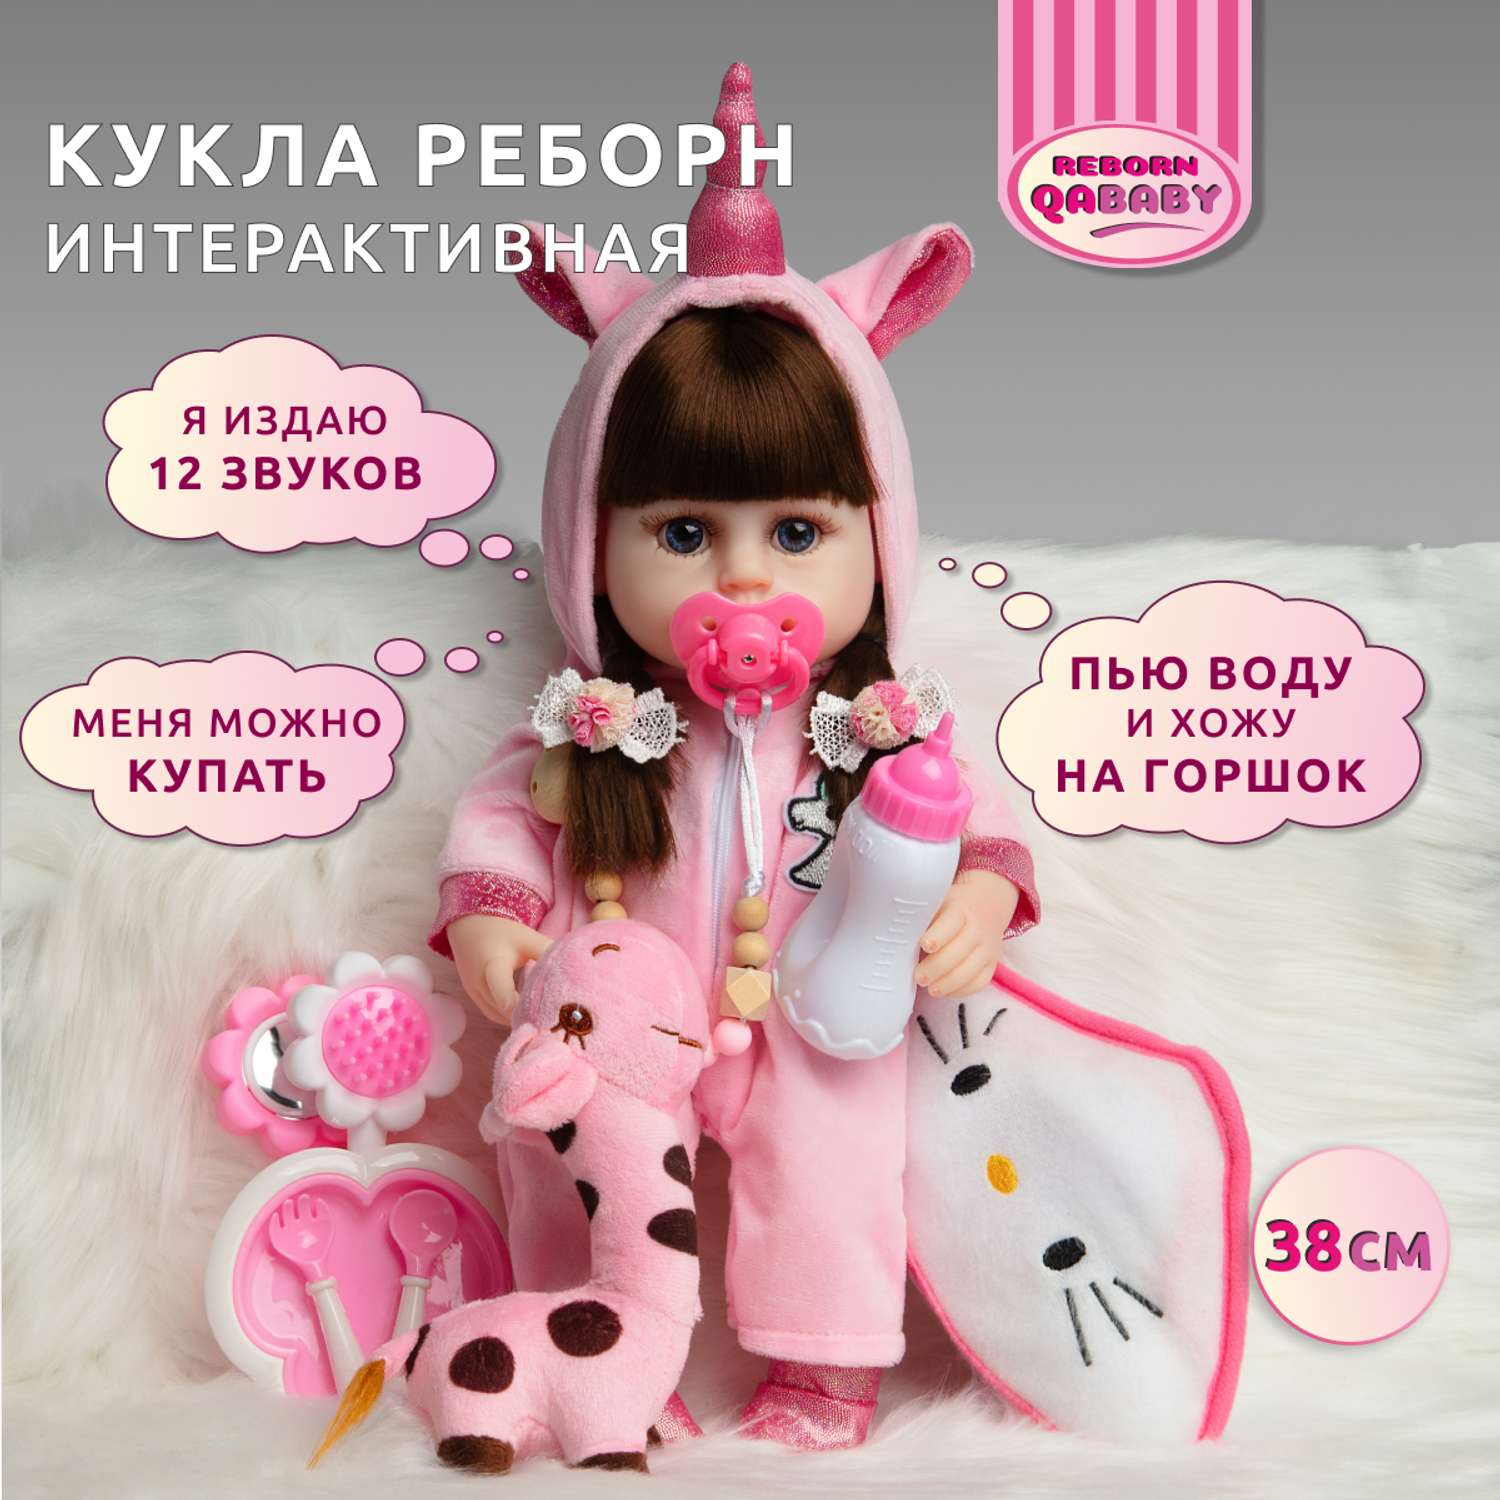 Кукла Реборн QA BABY Роза девочка интерактивная Пупс набор игрушки для ванной для девочки 38 см 3807 - фото 1